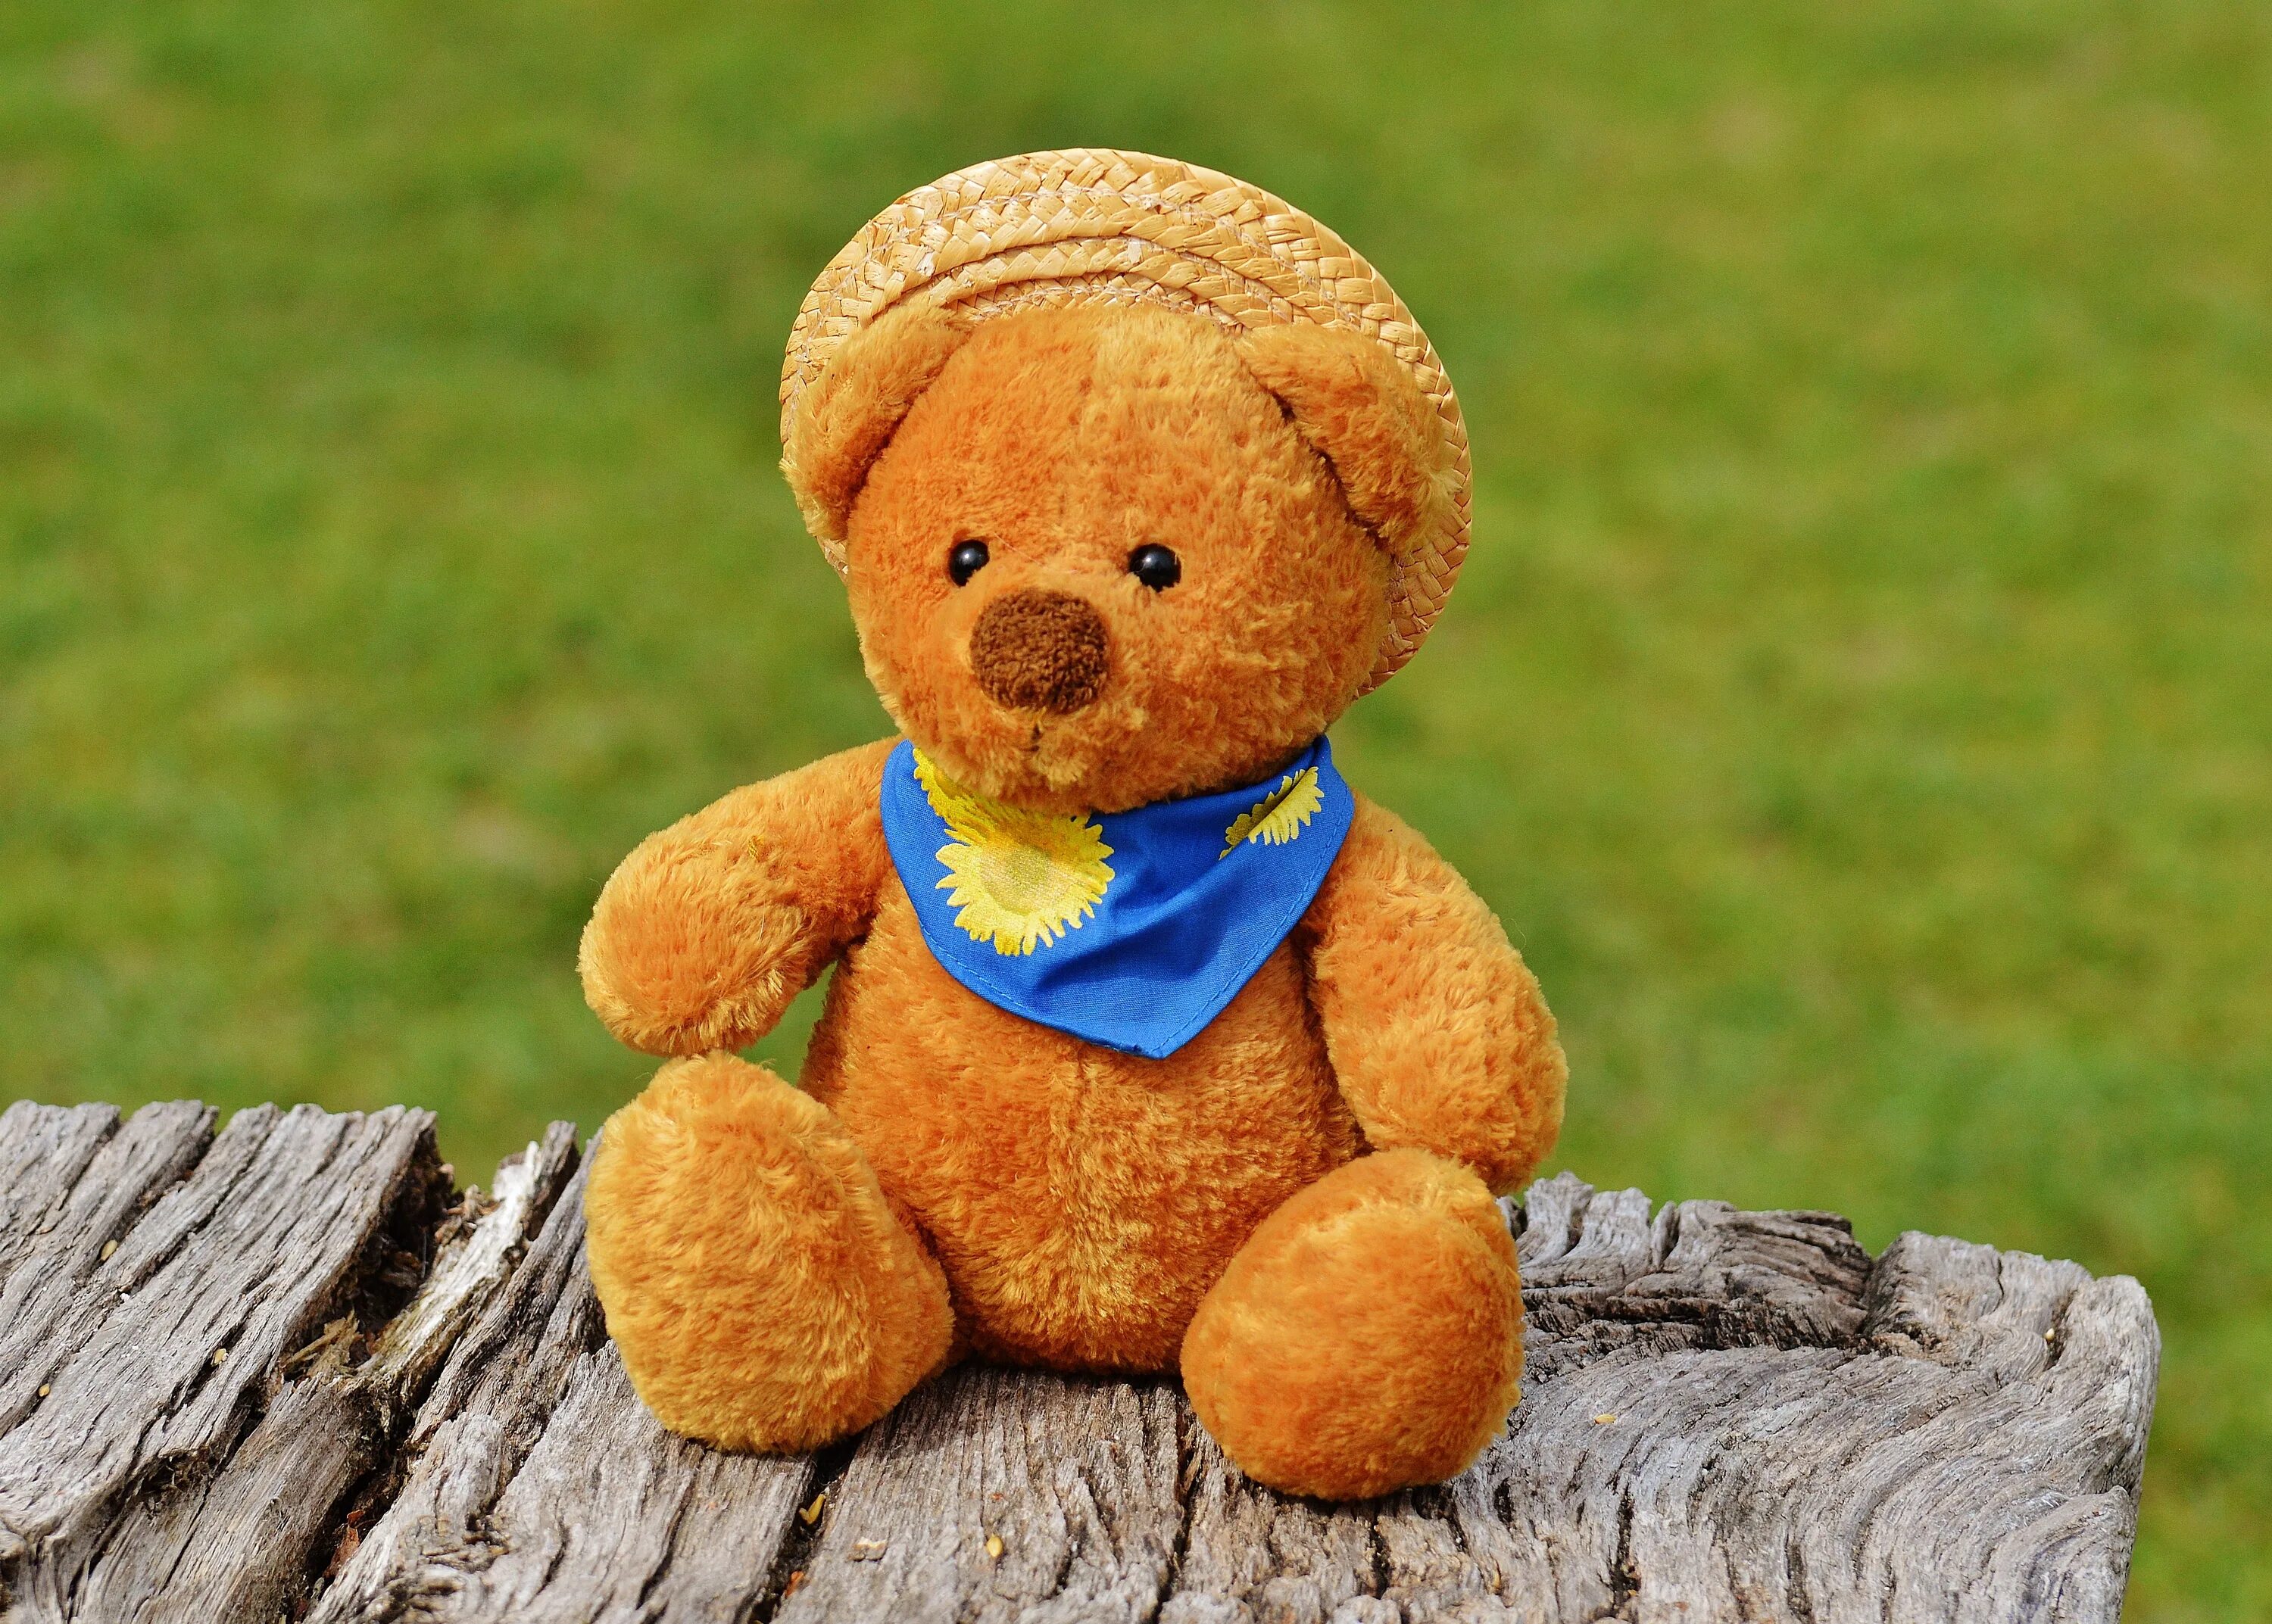 Тедди Беар. Мишки Тедди Беар. Мягкая игрушка Тедди Беар. Плюшевый Медвежонок. Toy bear перевод